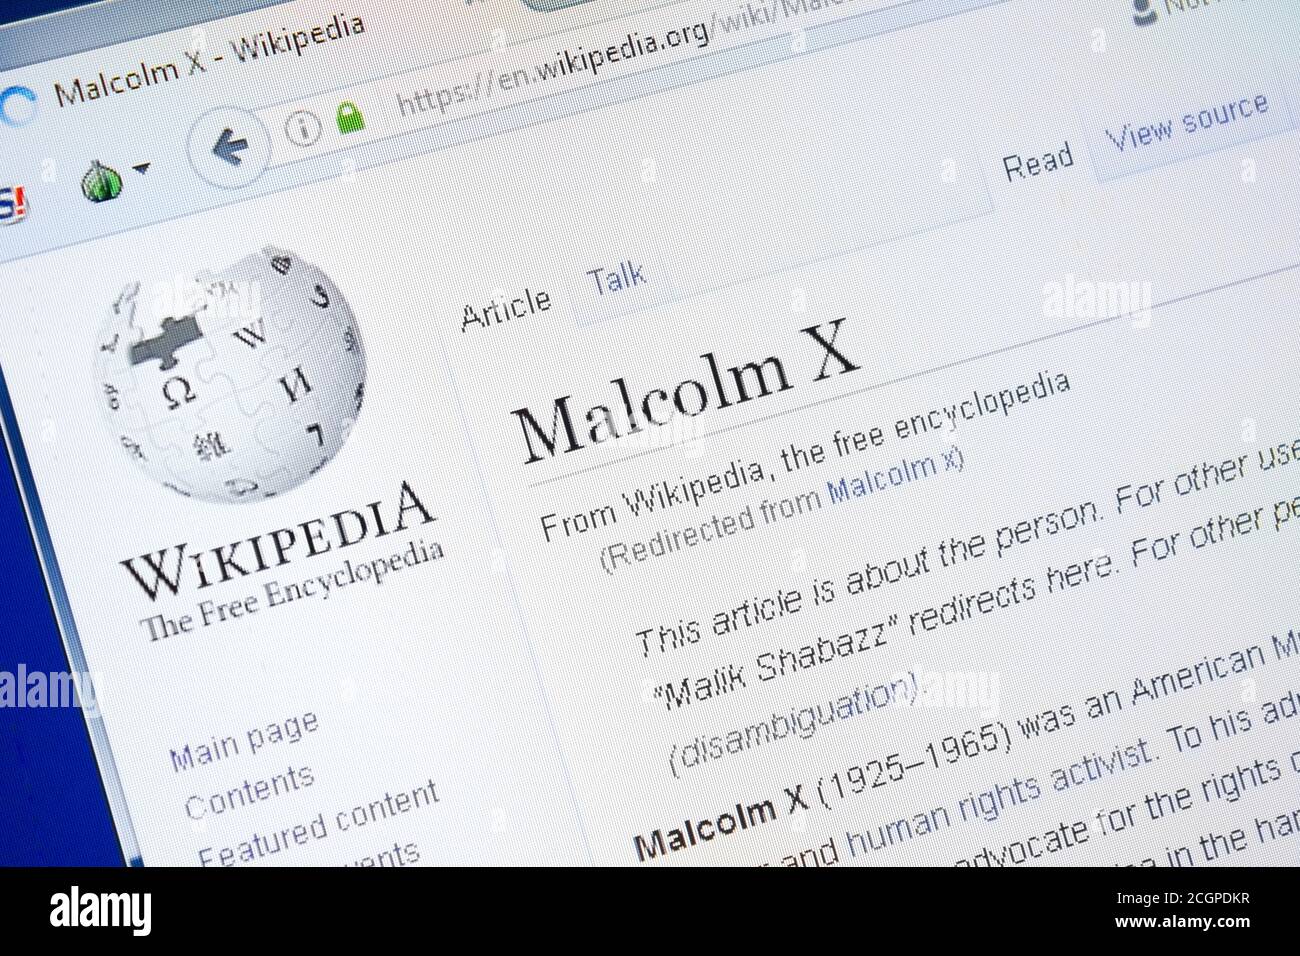 Ryazan, Russie - 28 août 2018: Page Wikipedia sur Malcolm X sur l'affichage de PC Banque D'Images